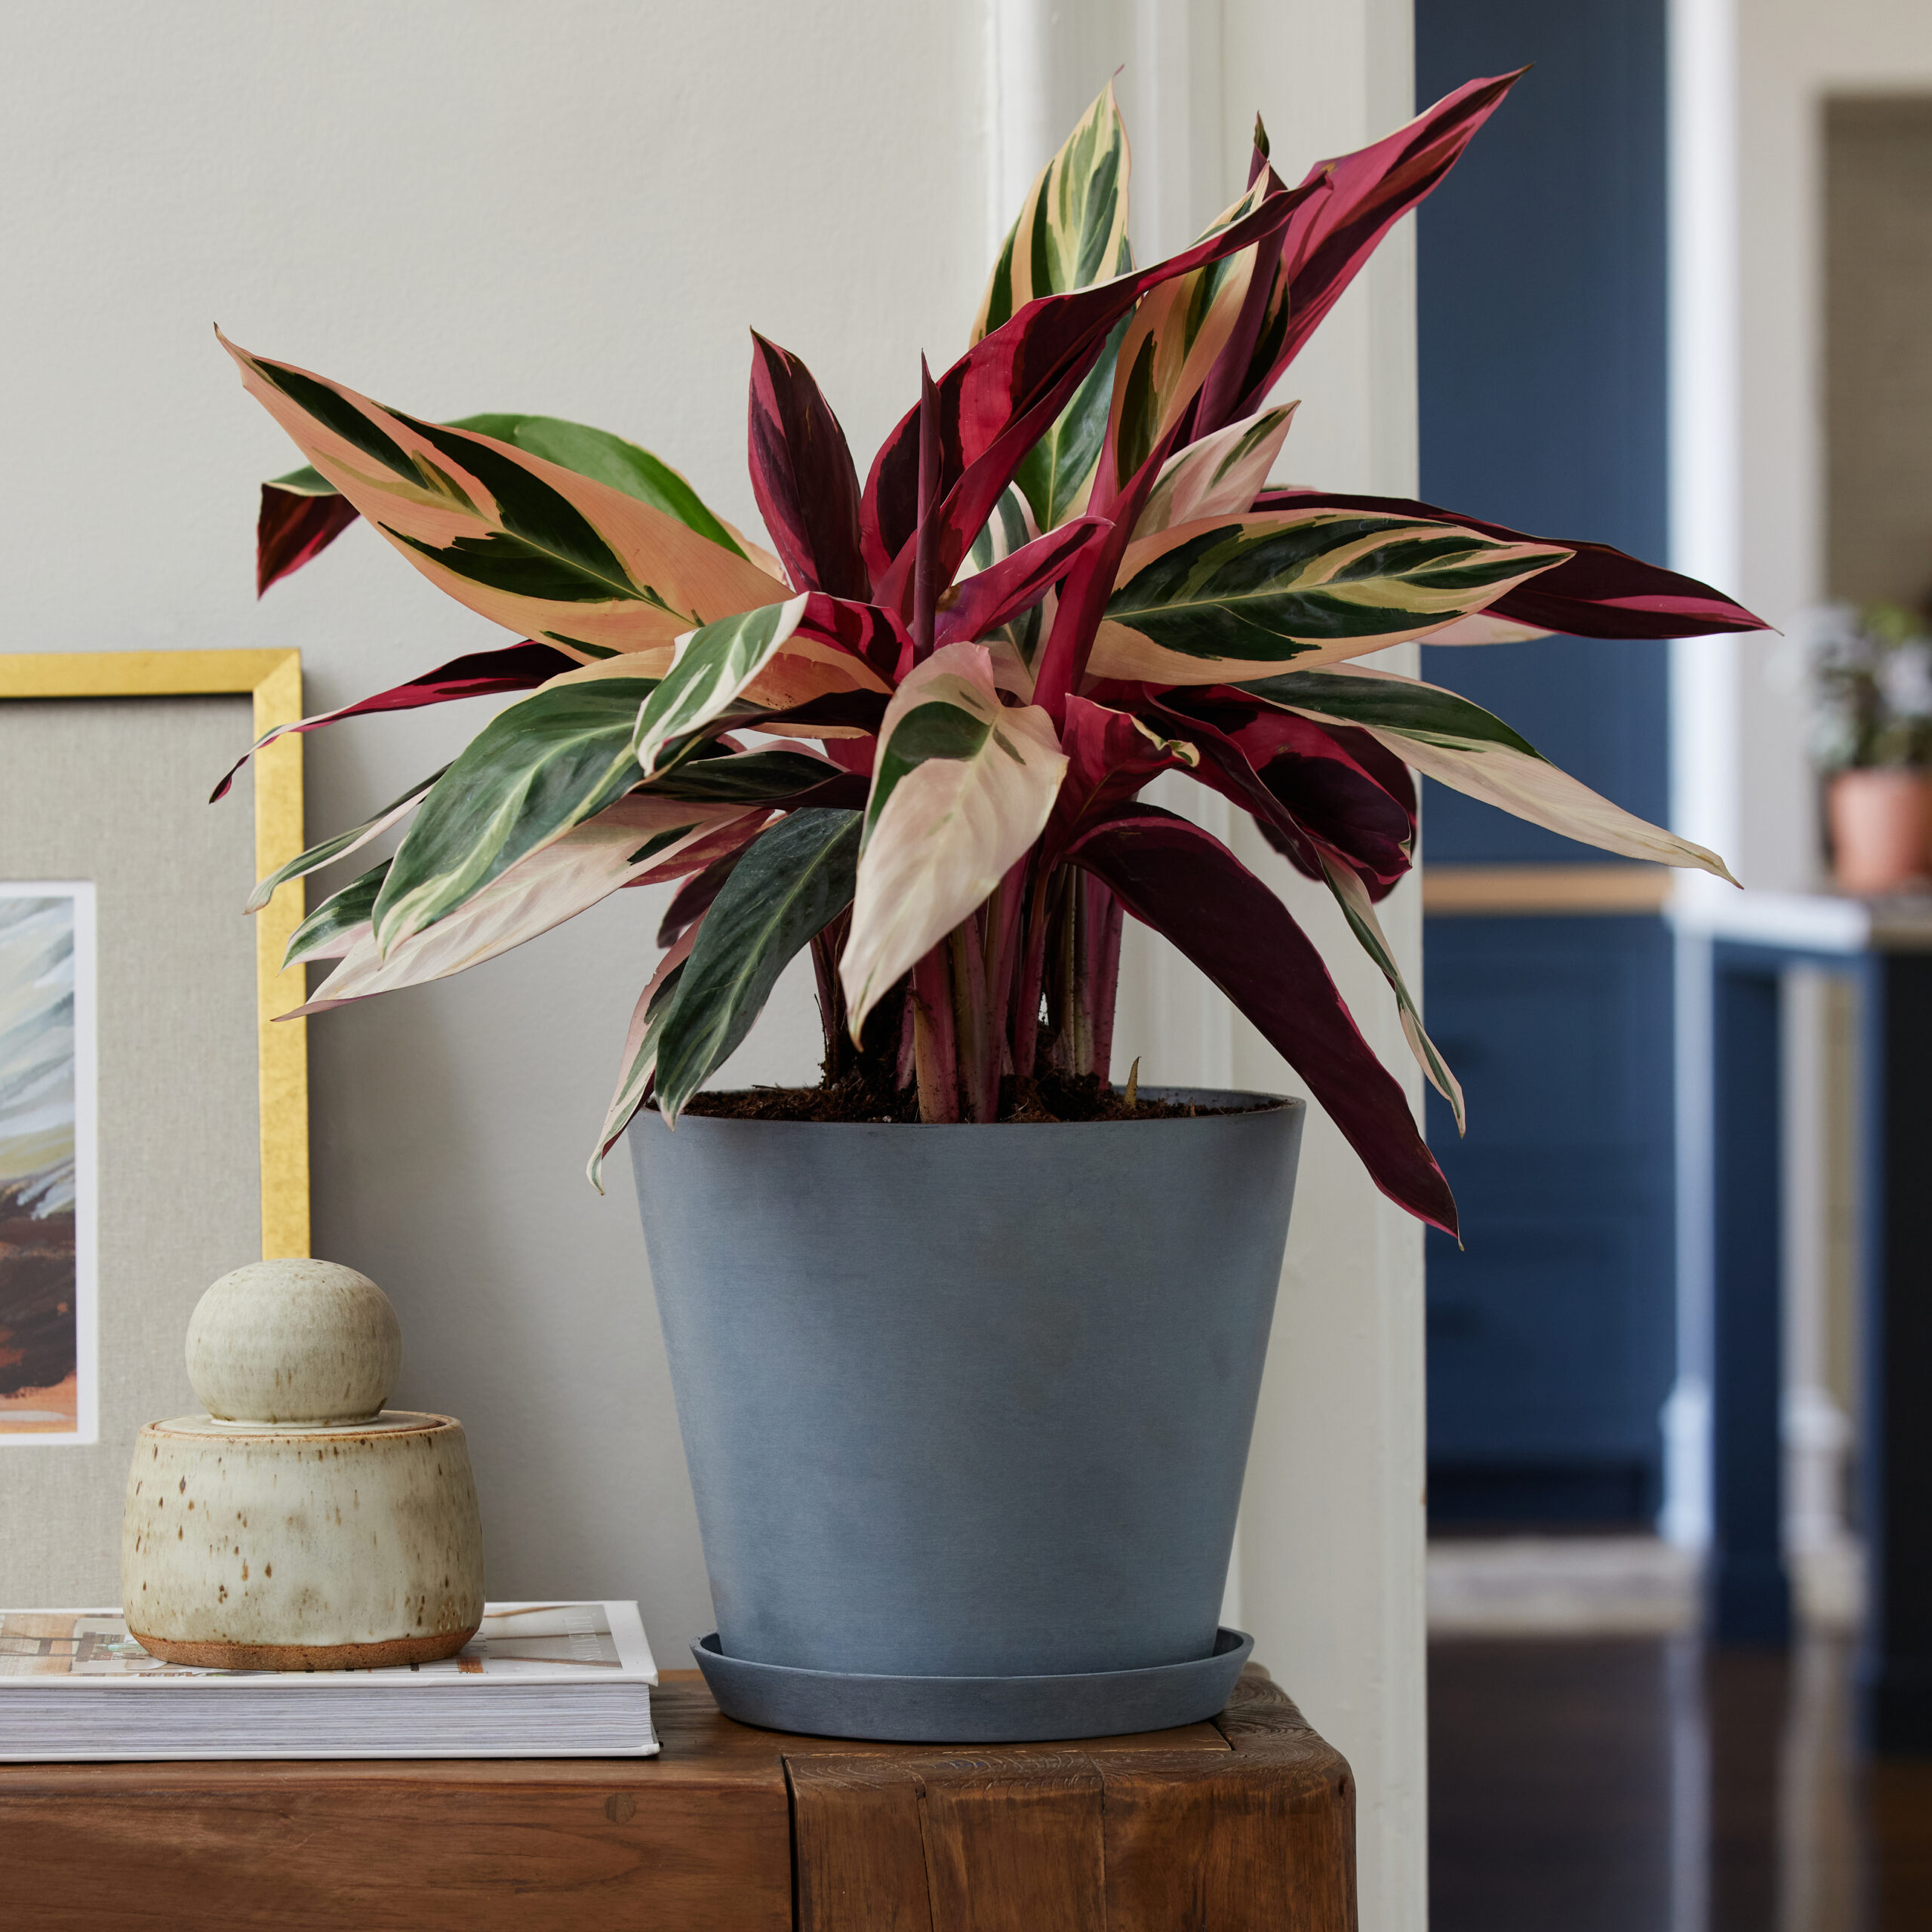 Stromanthe Triostar plant under $150